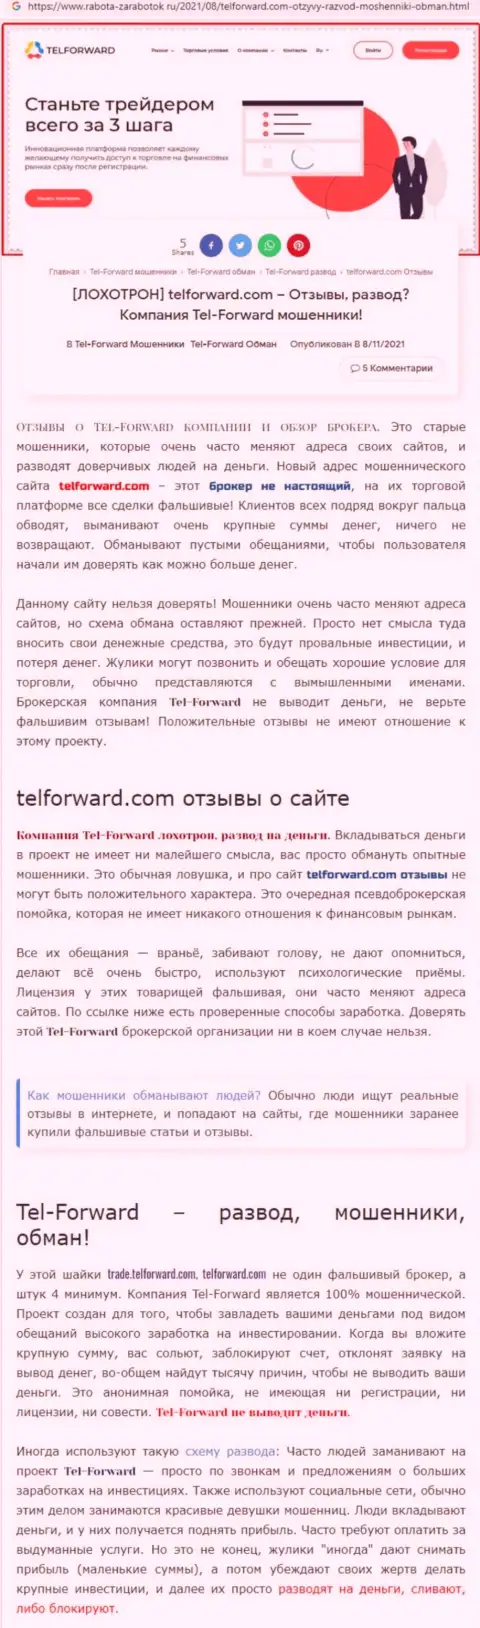 Tel-Forward - это ВОРЫ ! Условия сотрудничества, как приманка для лохов - обзор афер